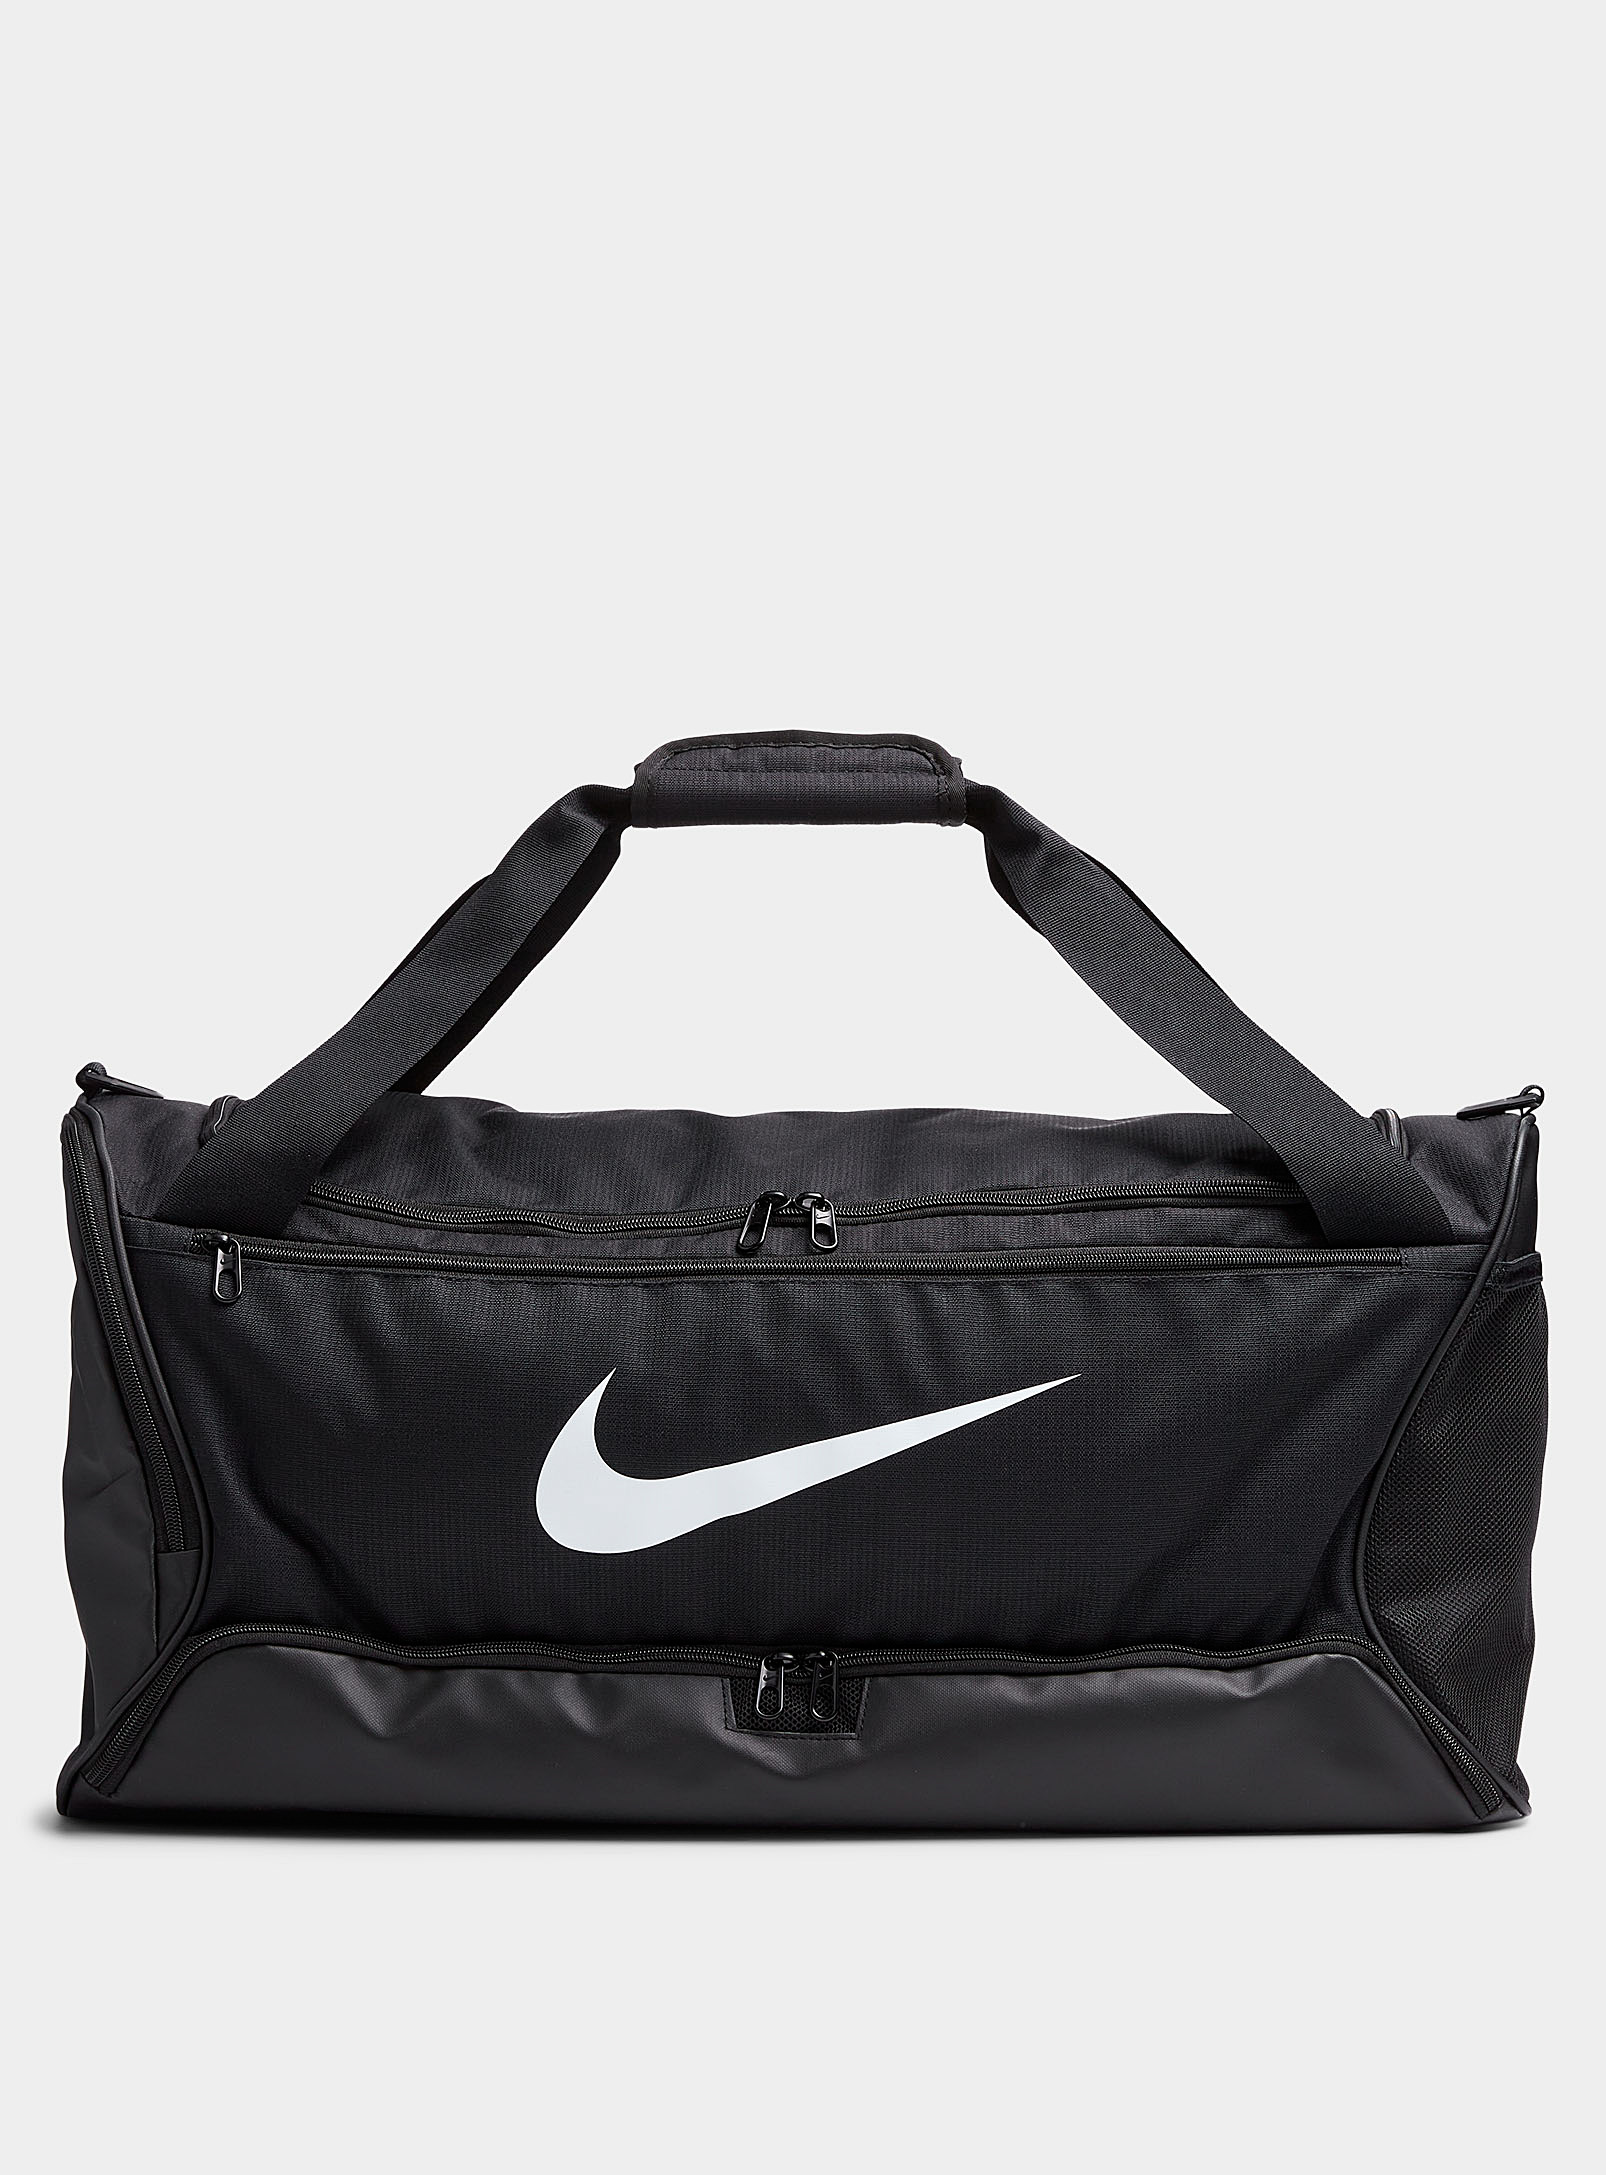 Nike - Men's Brasilia duffle bag